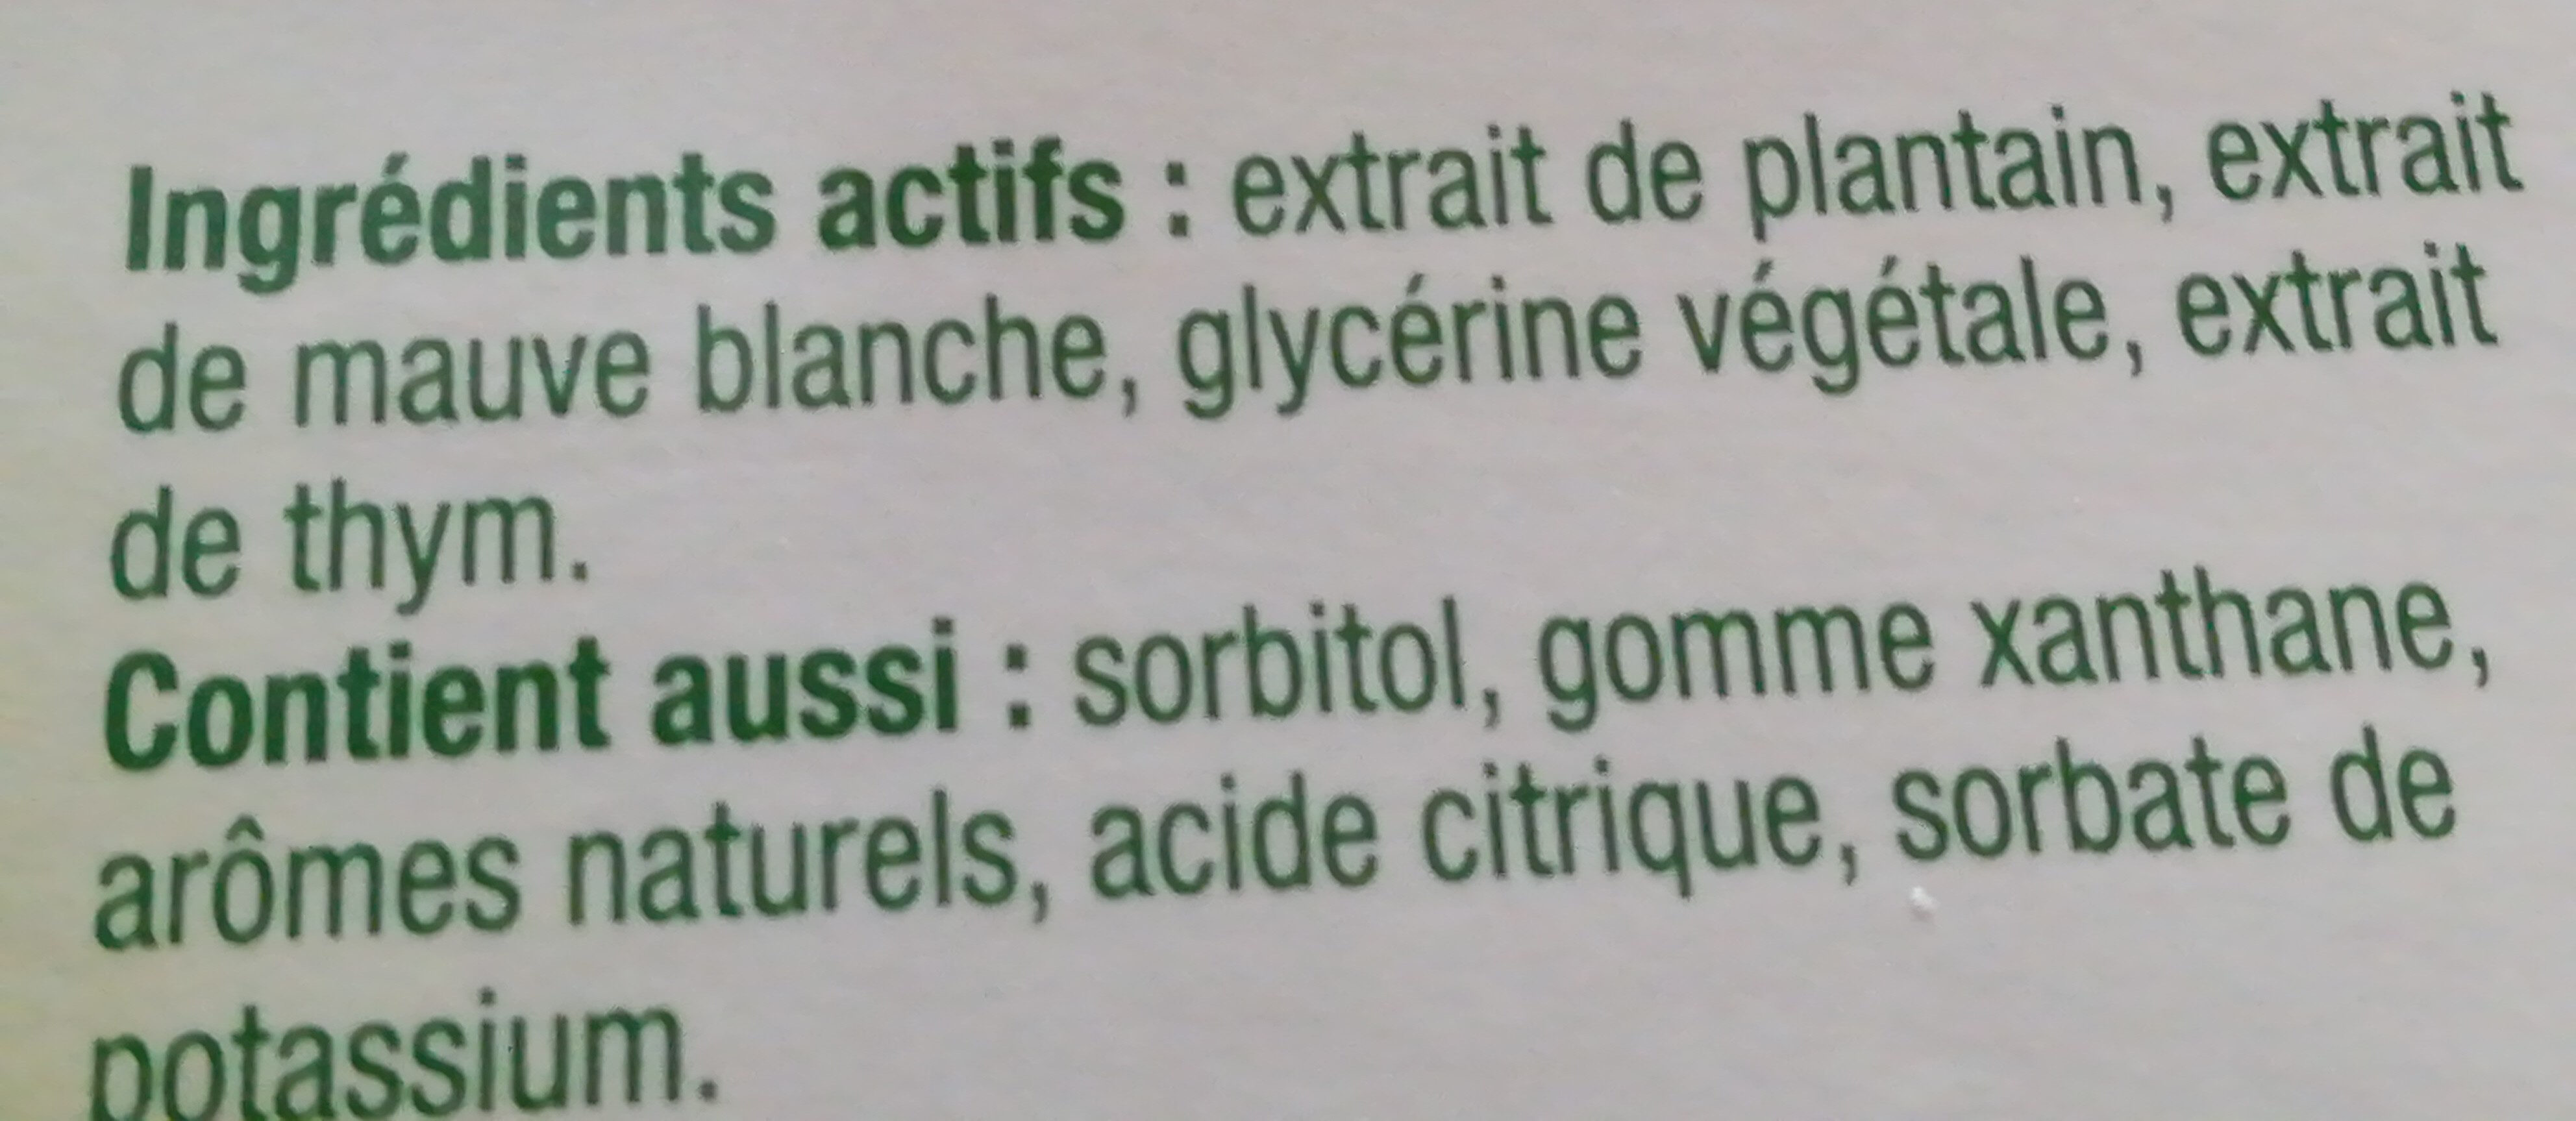 phytoxil - Ingredients - fr